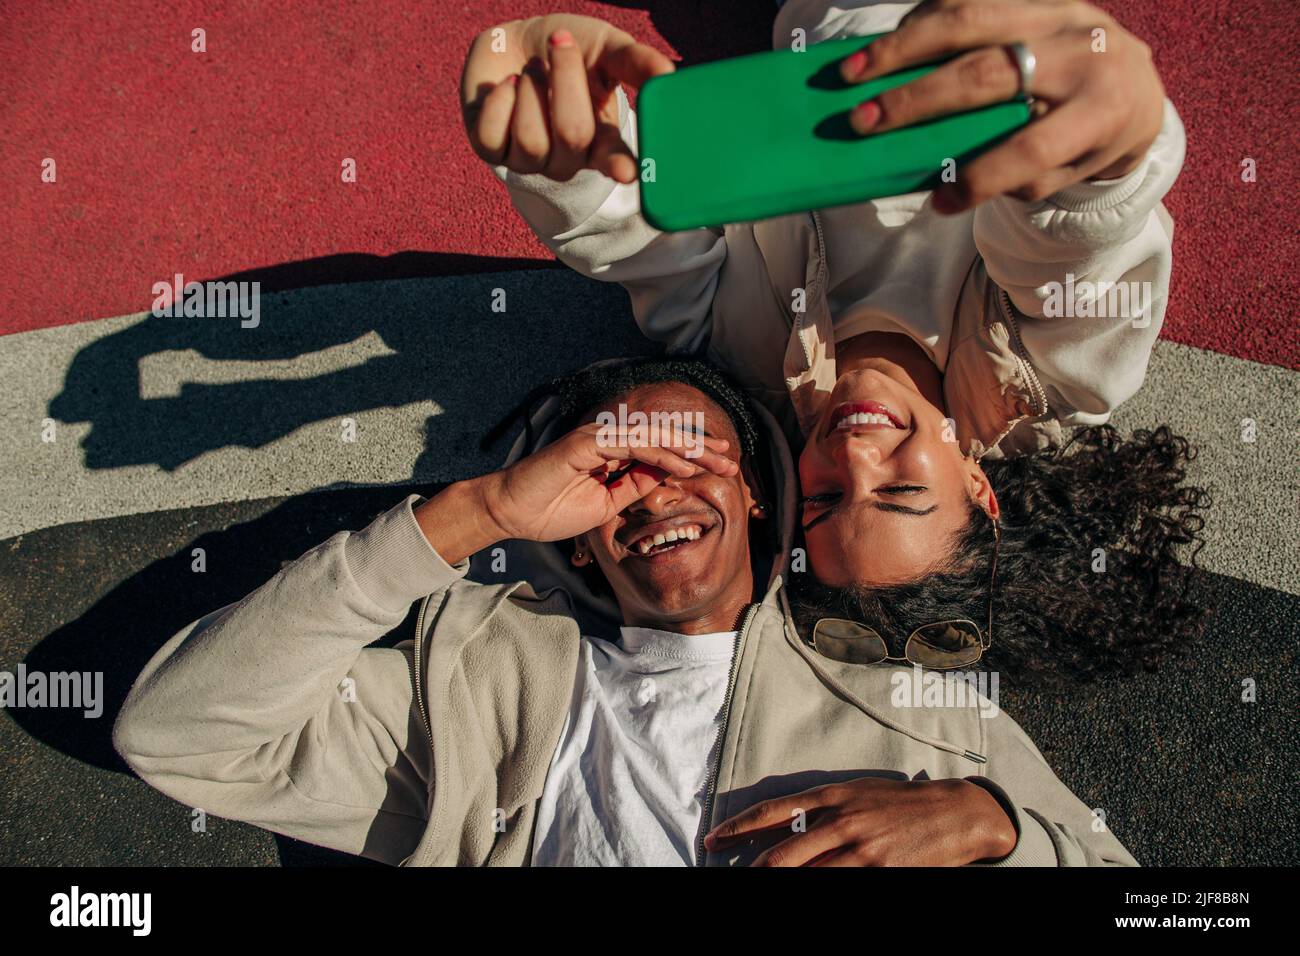 De jeunes amis heureux prenant le selfie par le biais d'un smartphone tout en étant allongé dans un terrain de jeu Banque D'Images